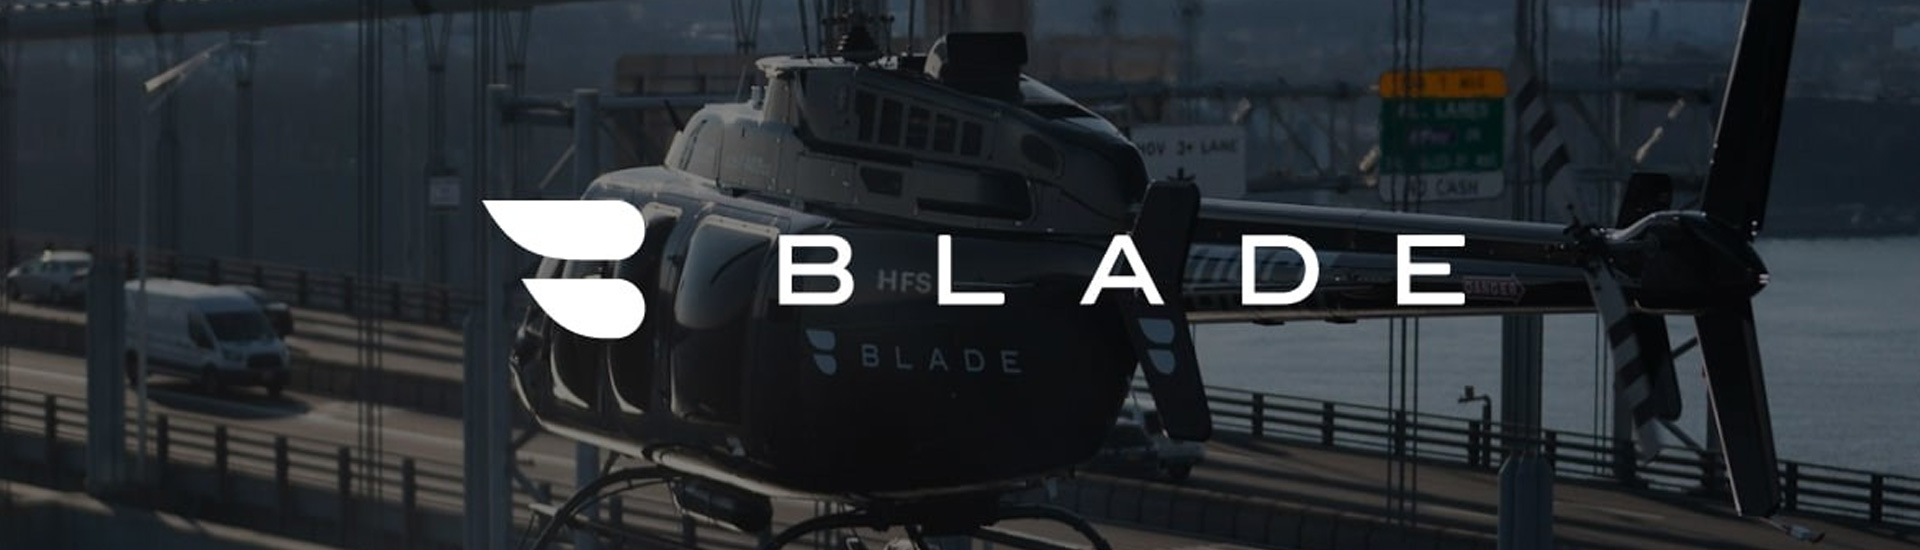 Blade Air Mobility, Inc. (xnas:blde)